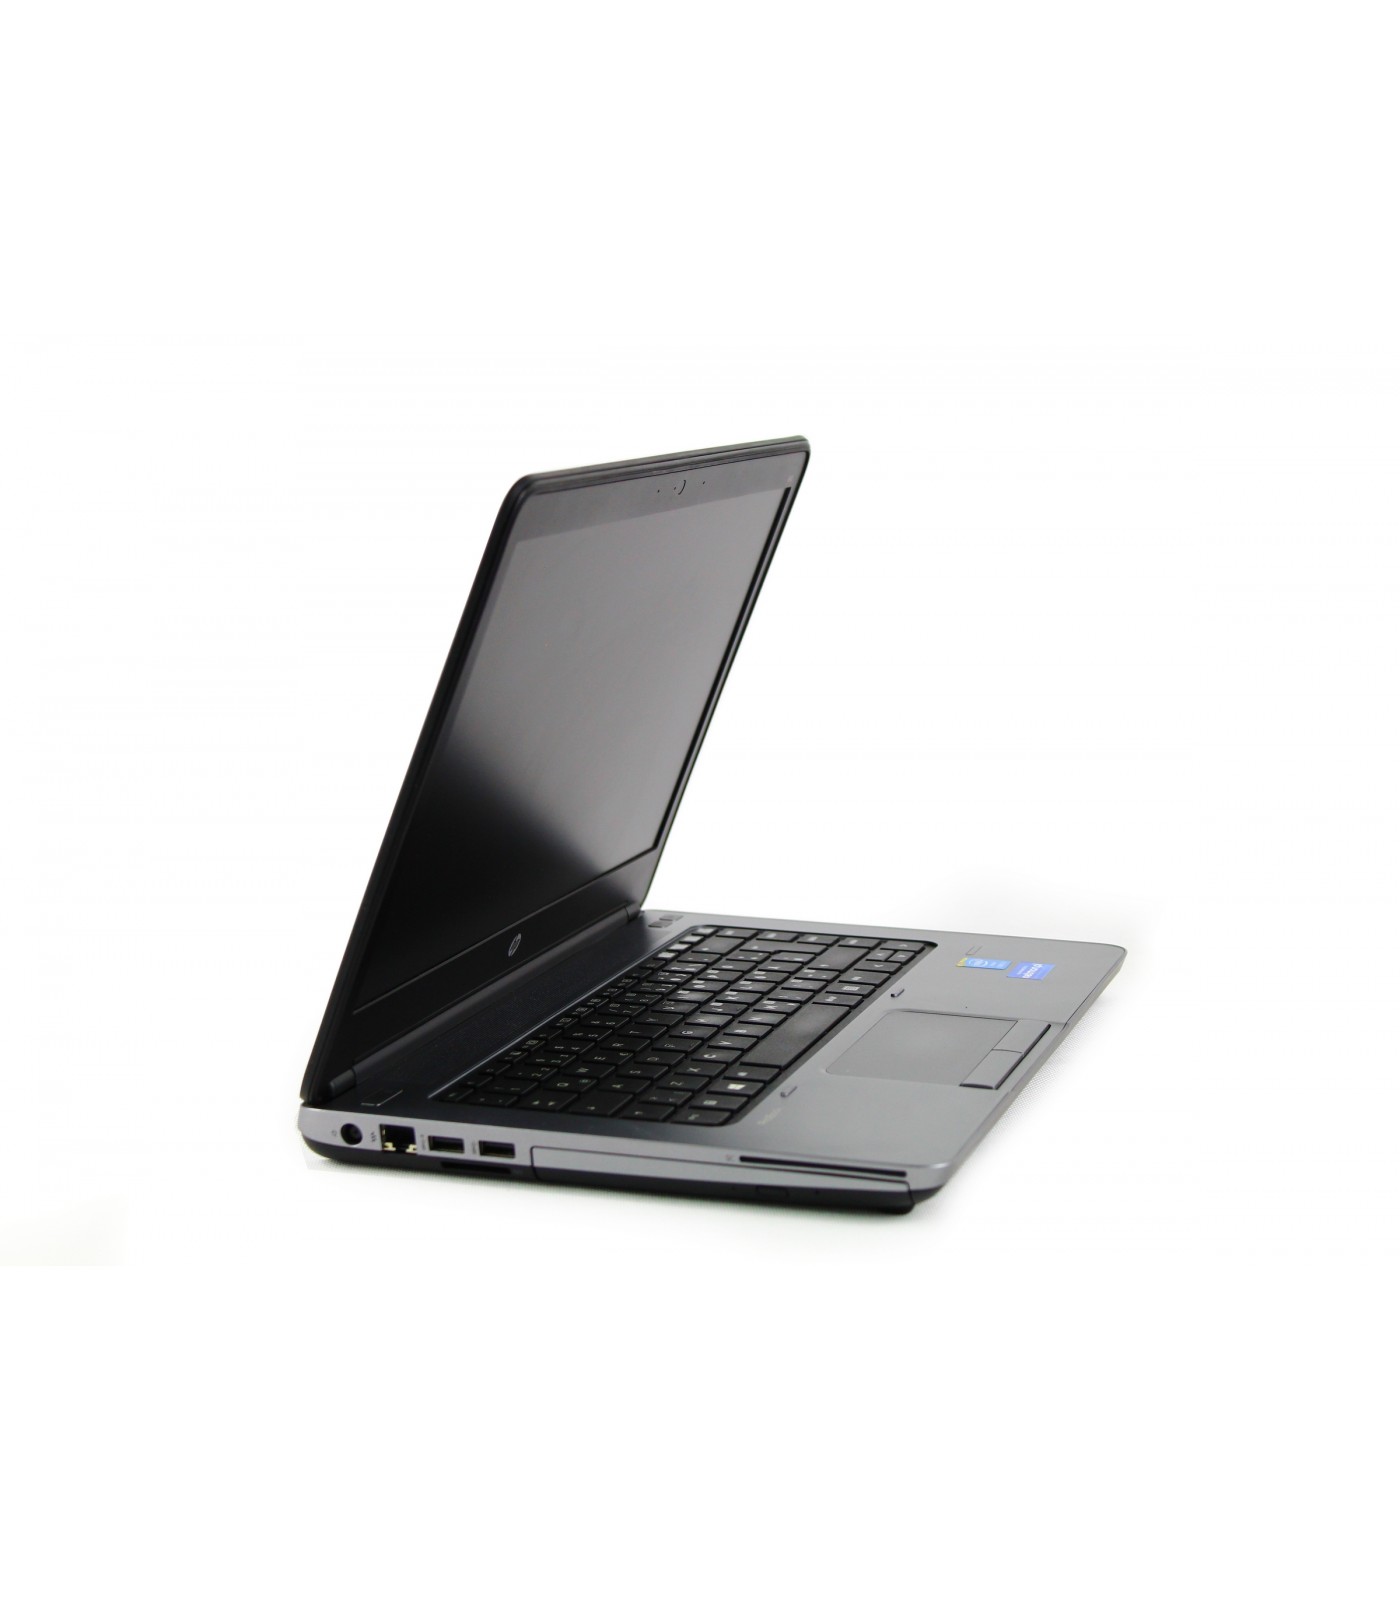 HP ProBook 640 G1 i3-4000M 1600x900 Klasa B